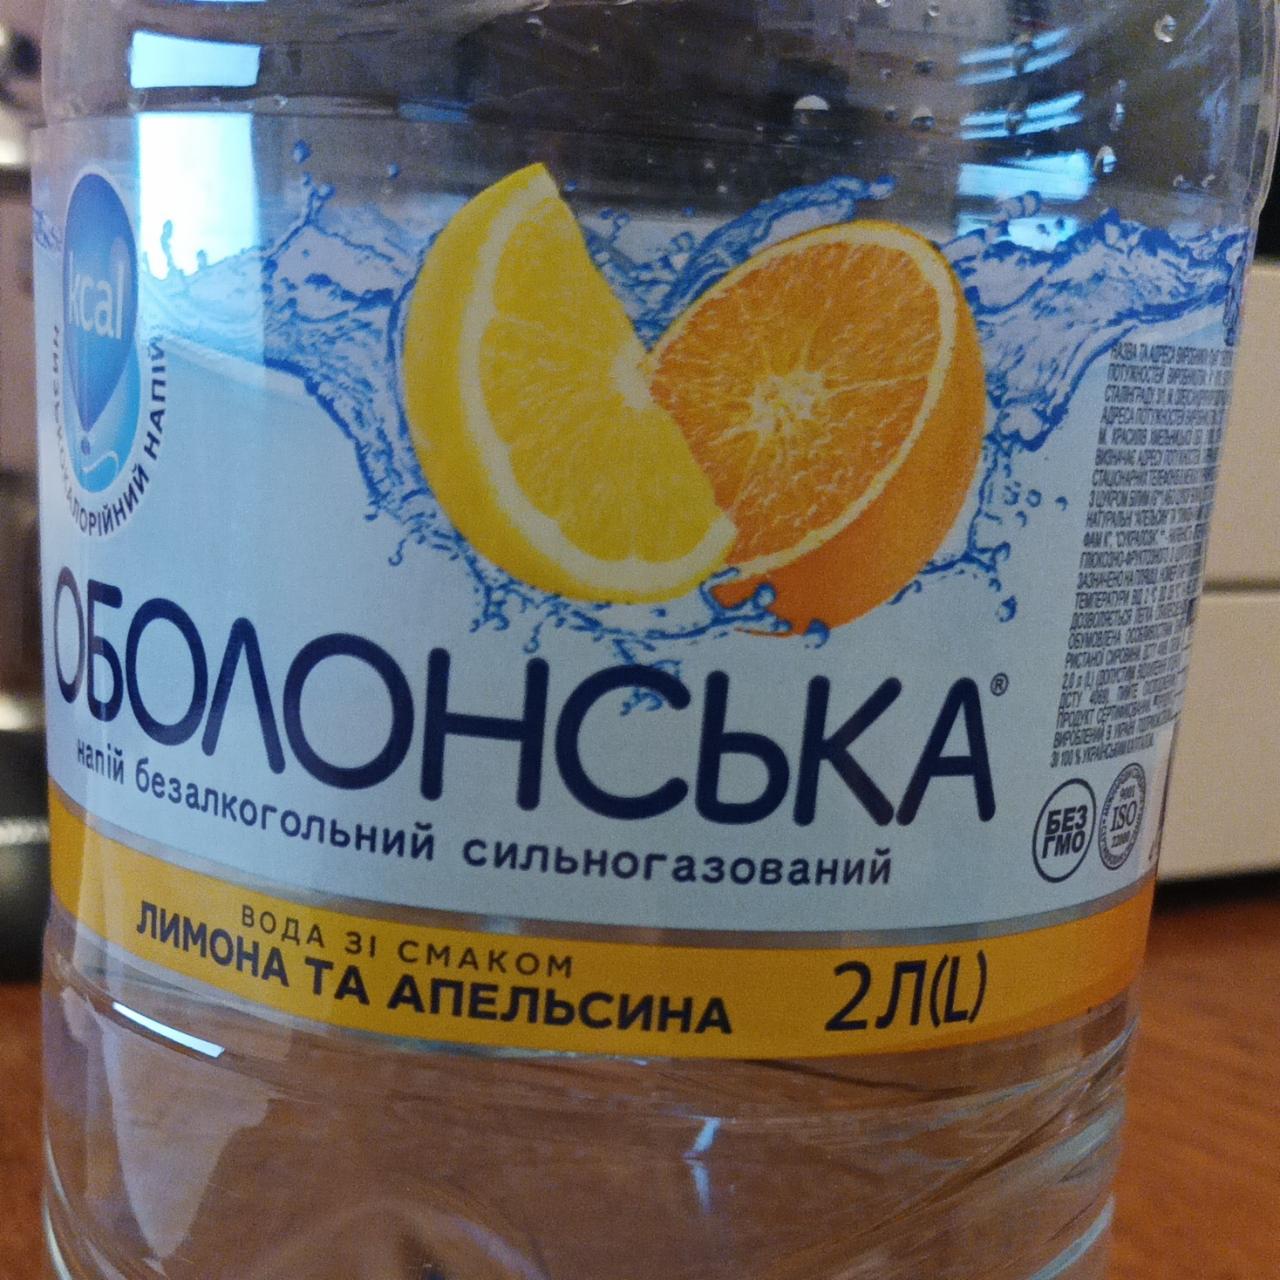 Фото - вода со вкусом лимона и апельсина Оболонська